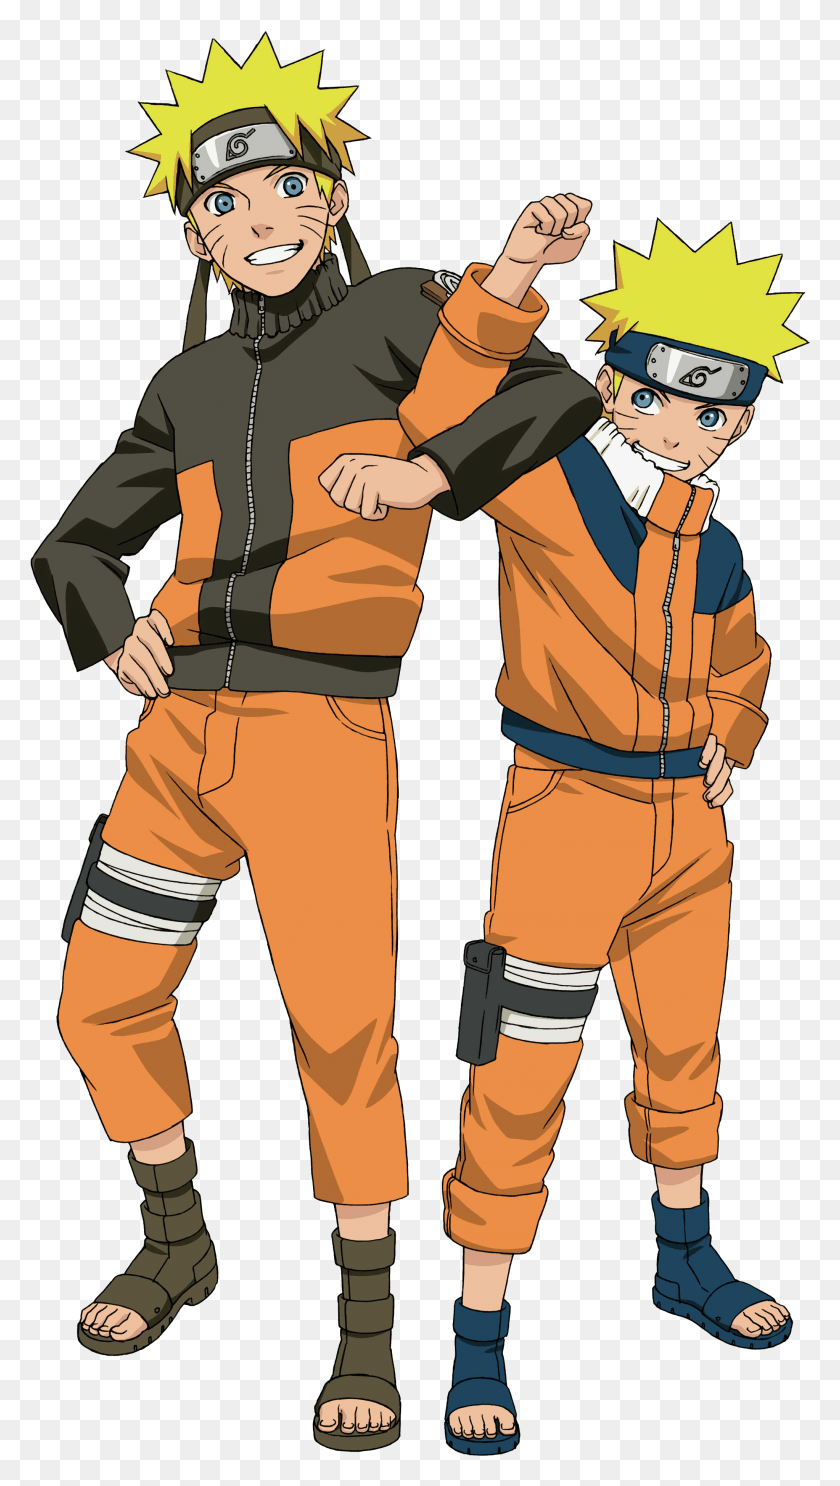 2045x3739 Curiosamente Ichigo De Bleach Comparte Muchos De Estos Naruto Y Naruto Shippuden, Persona, Humano, Comics Hd Png Descargar